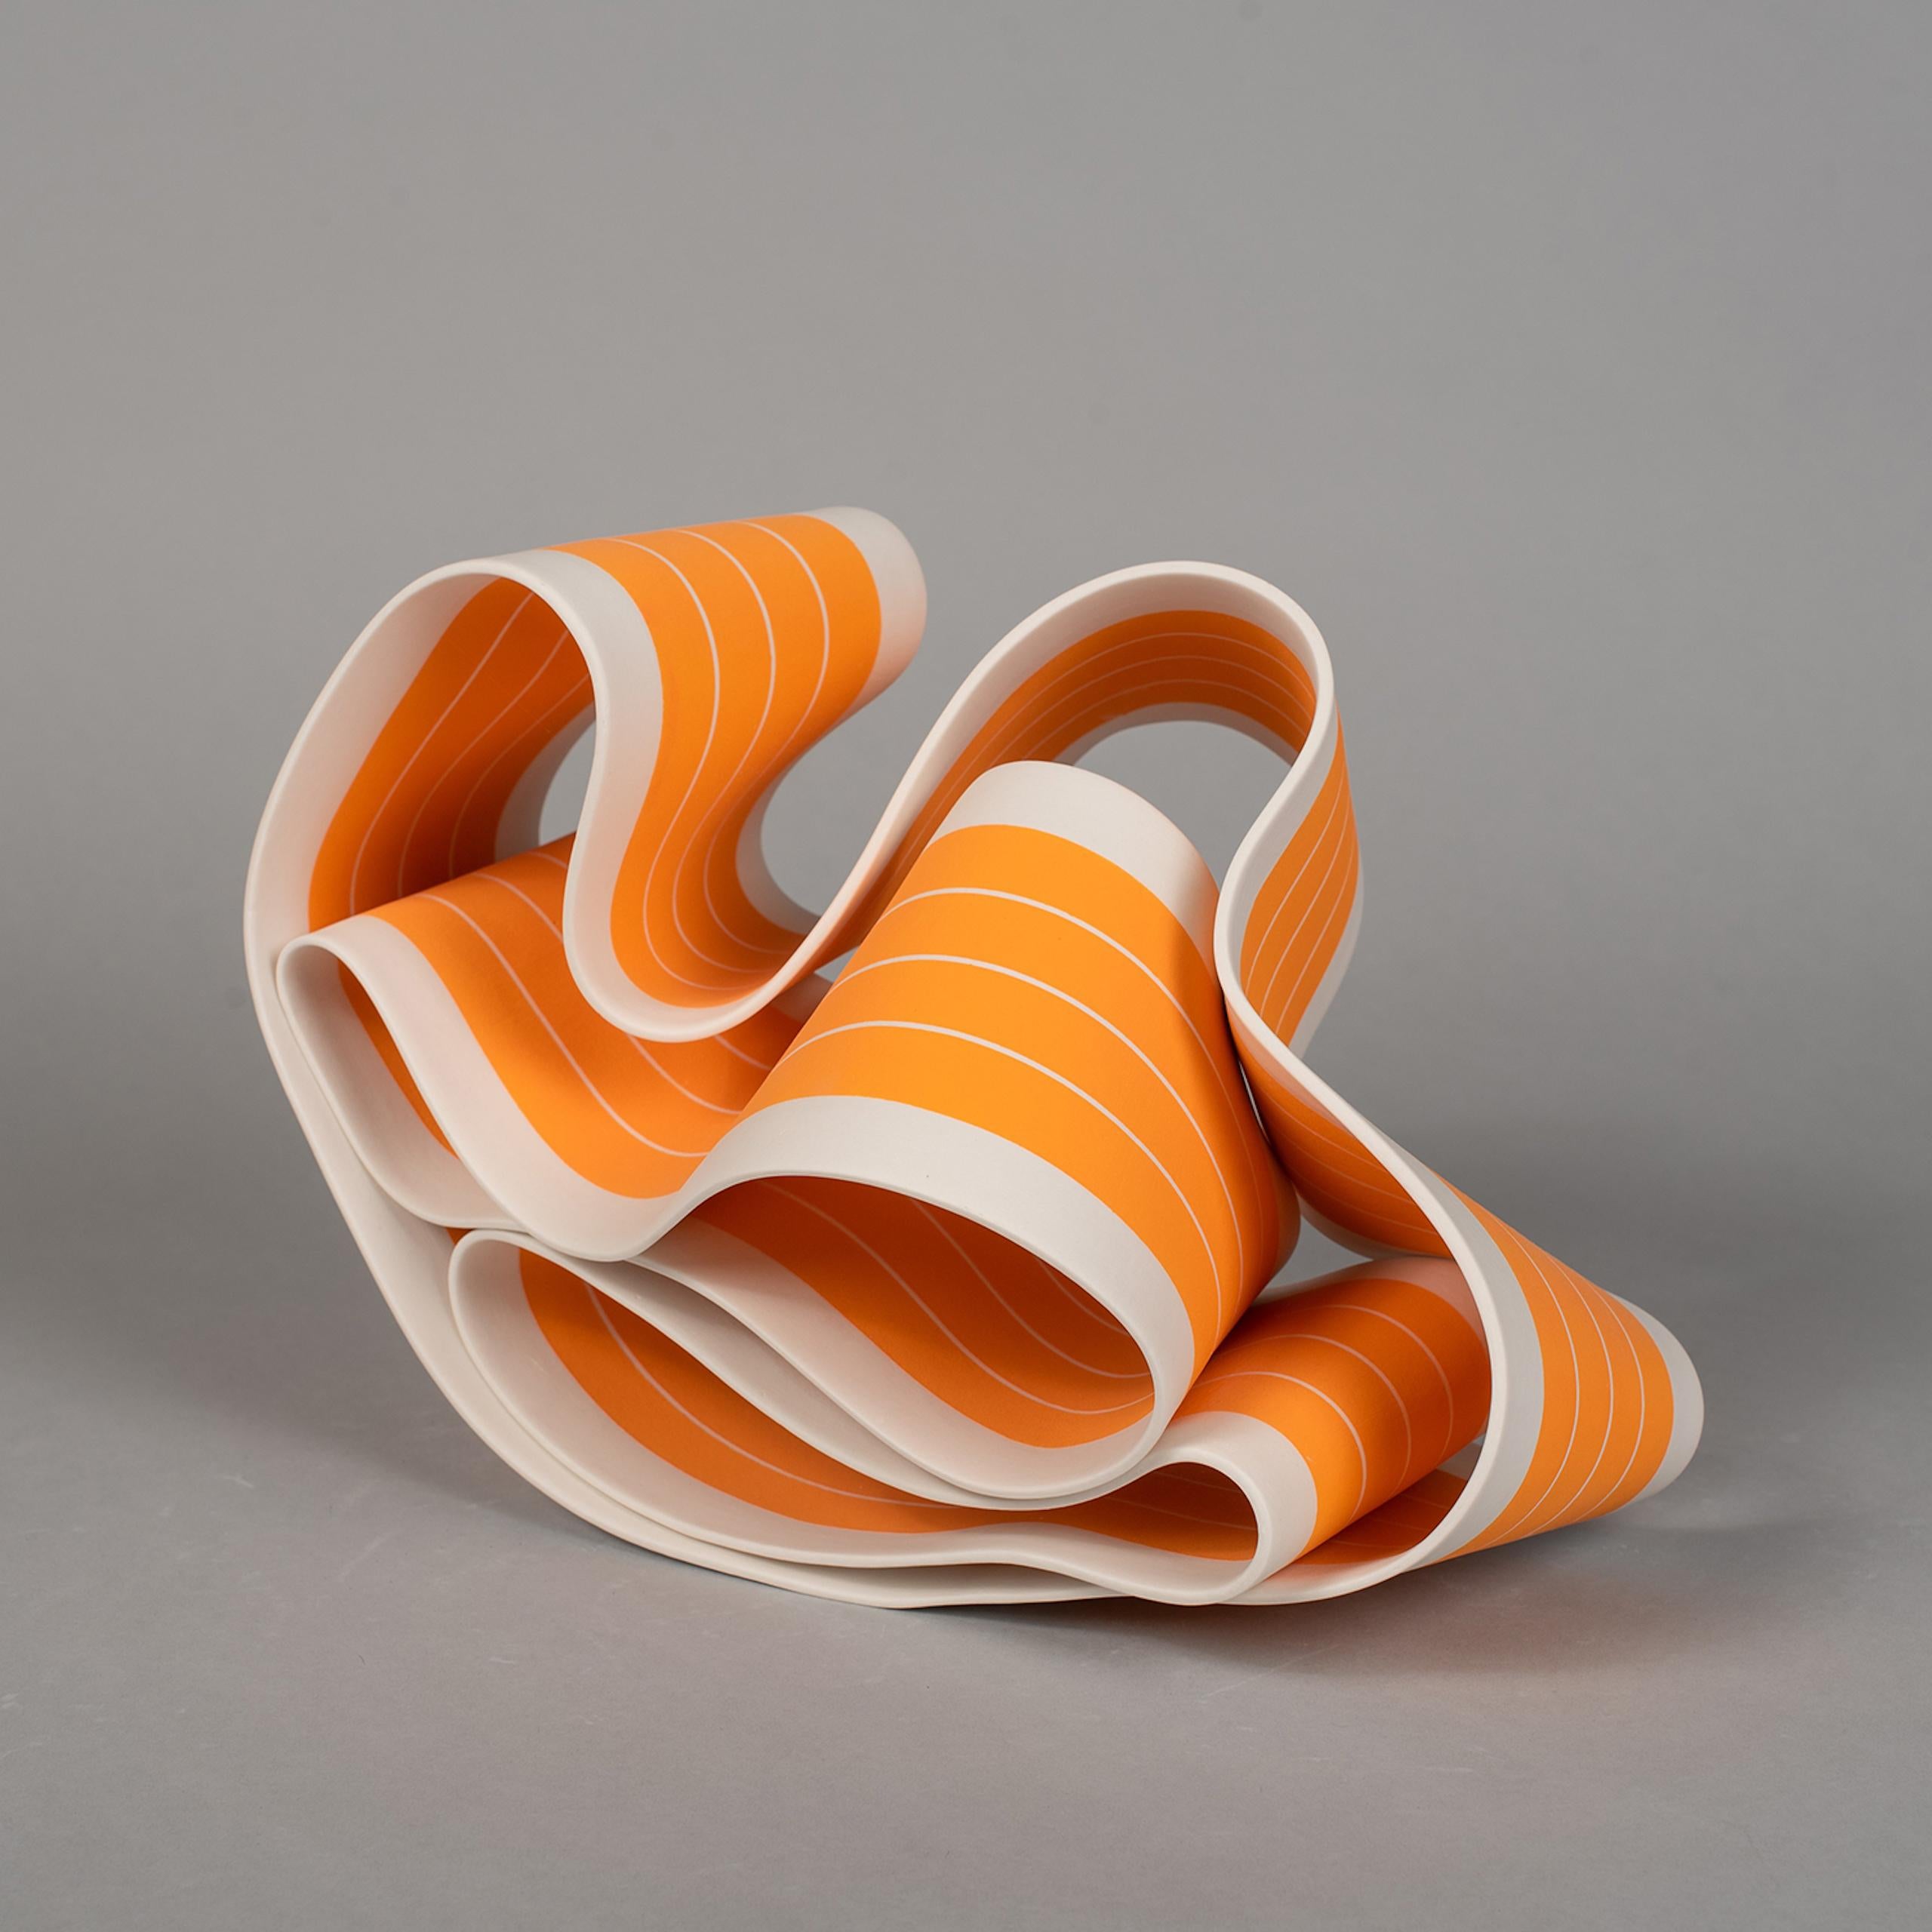 Folding in Motion 5 est une sculpture unique en porcelaine de papier de l'artiste contemporain Simcha Even-Chen, dont les dimensions sont de 22 cm × 30 cm × 19 cm (8,7 × 11,8 × 7,5 in). La sculpture est signée et accompagnée d'un certificat